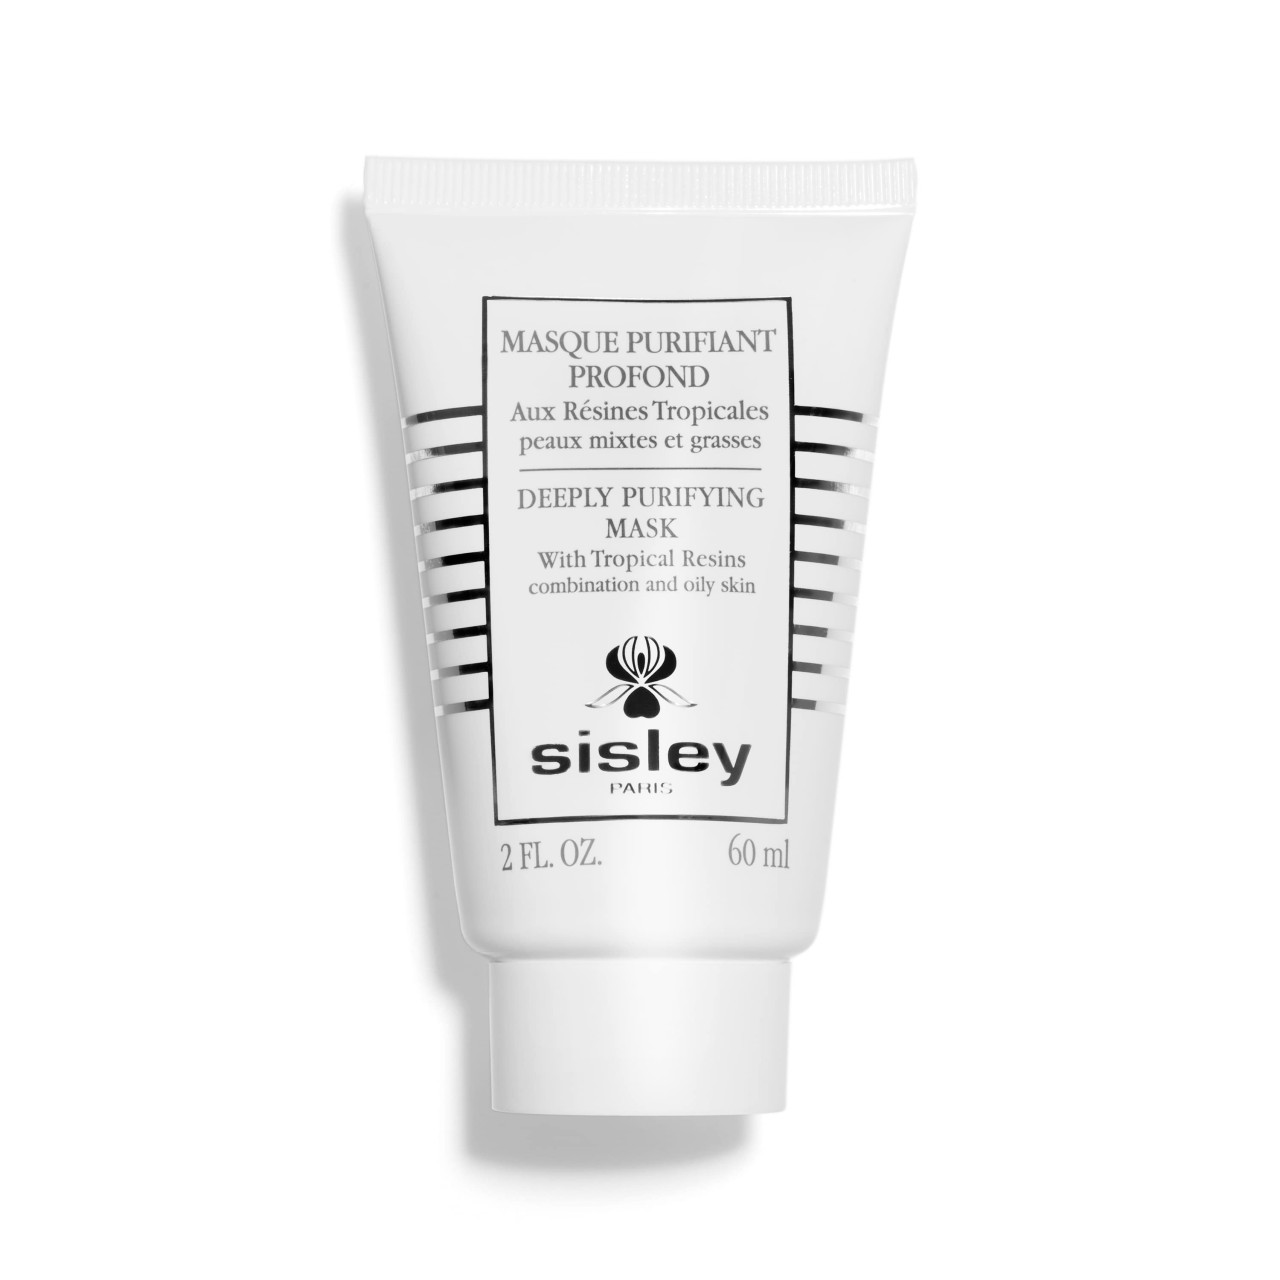 Sisley - Masque Purifiant -         